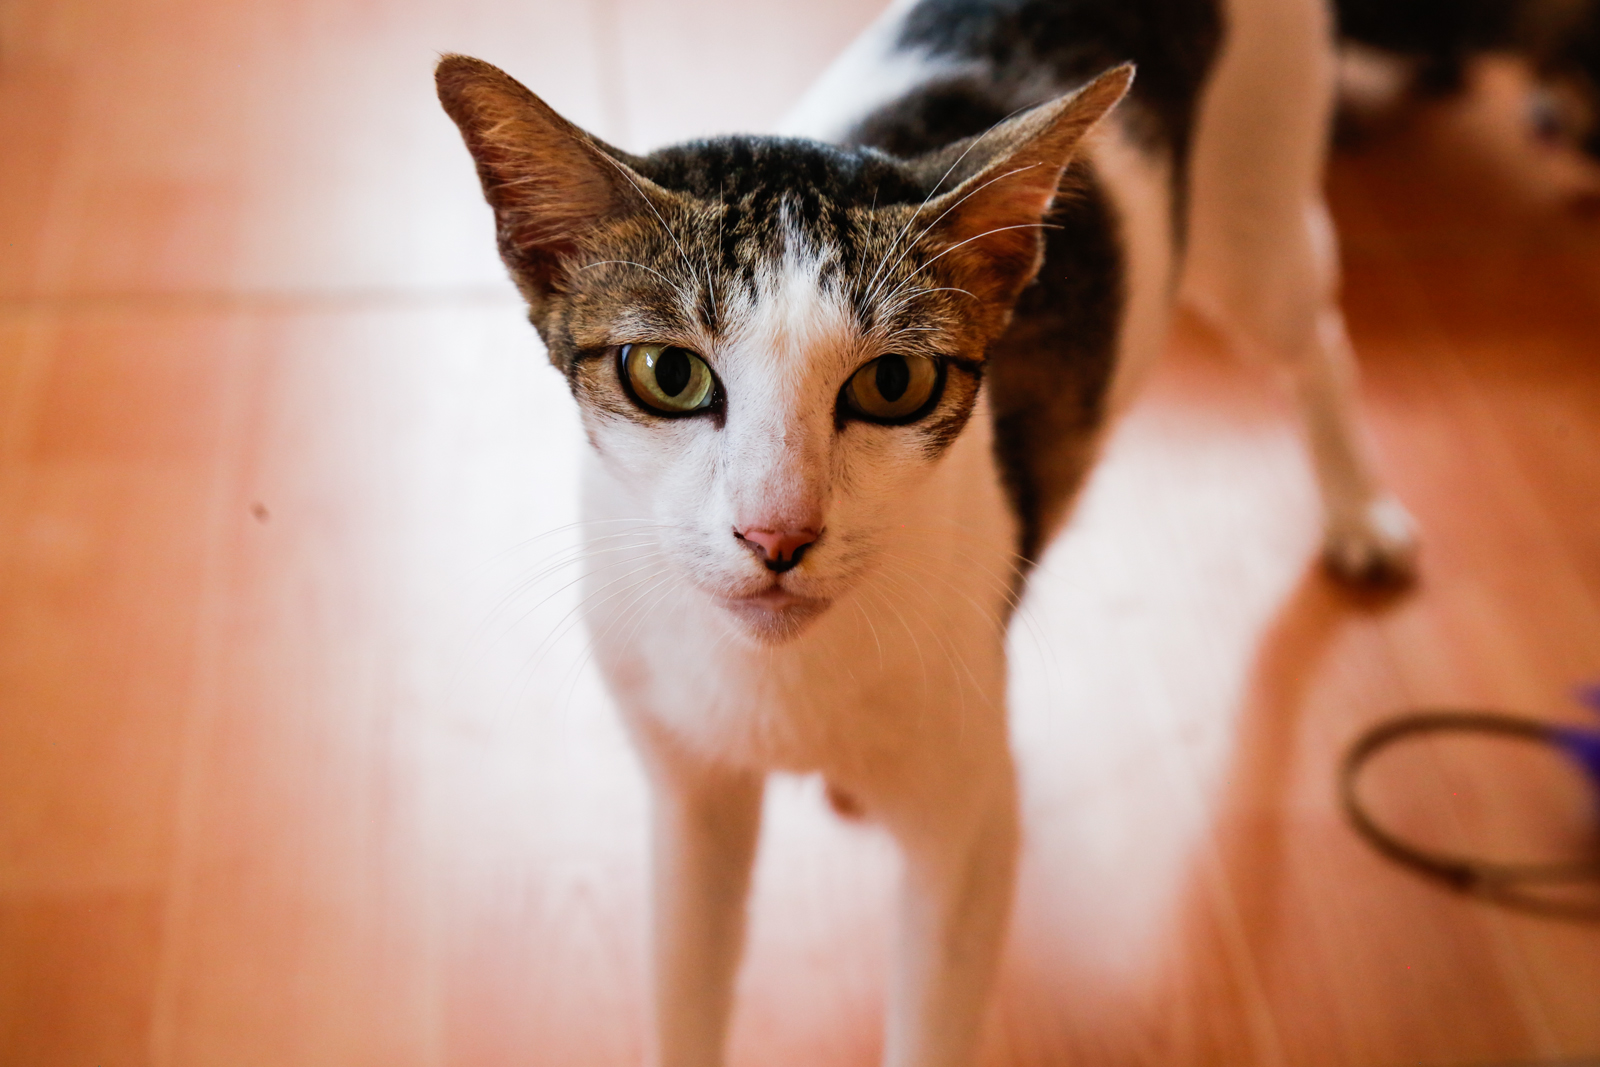 Cats for Adoption | Alfie | Vietnam Animal Aid & Rescue